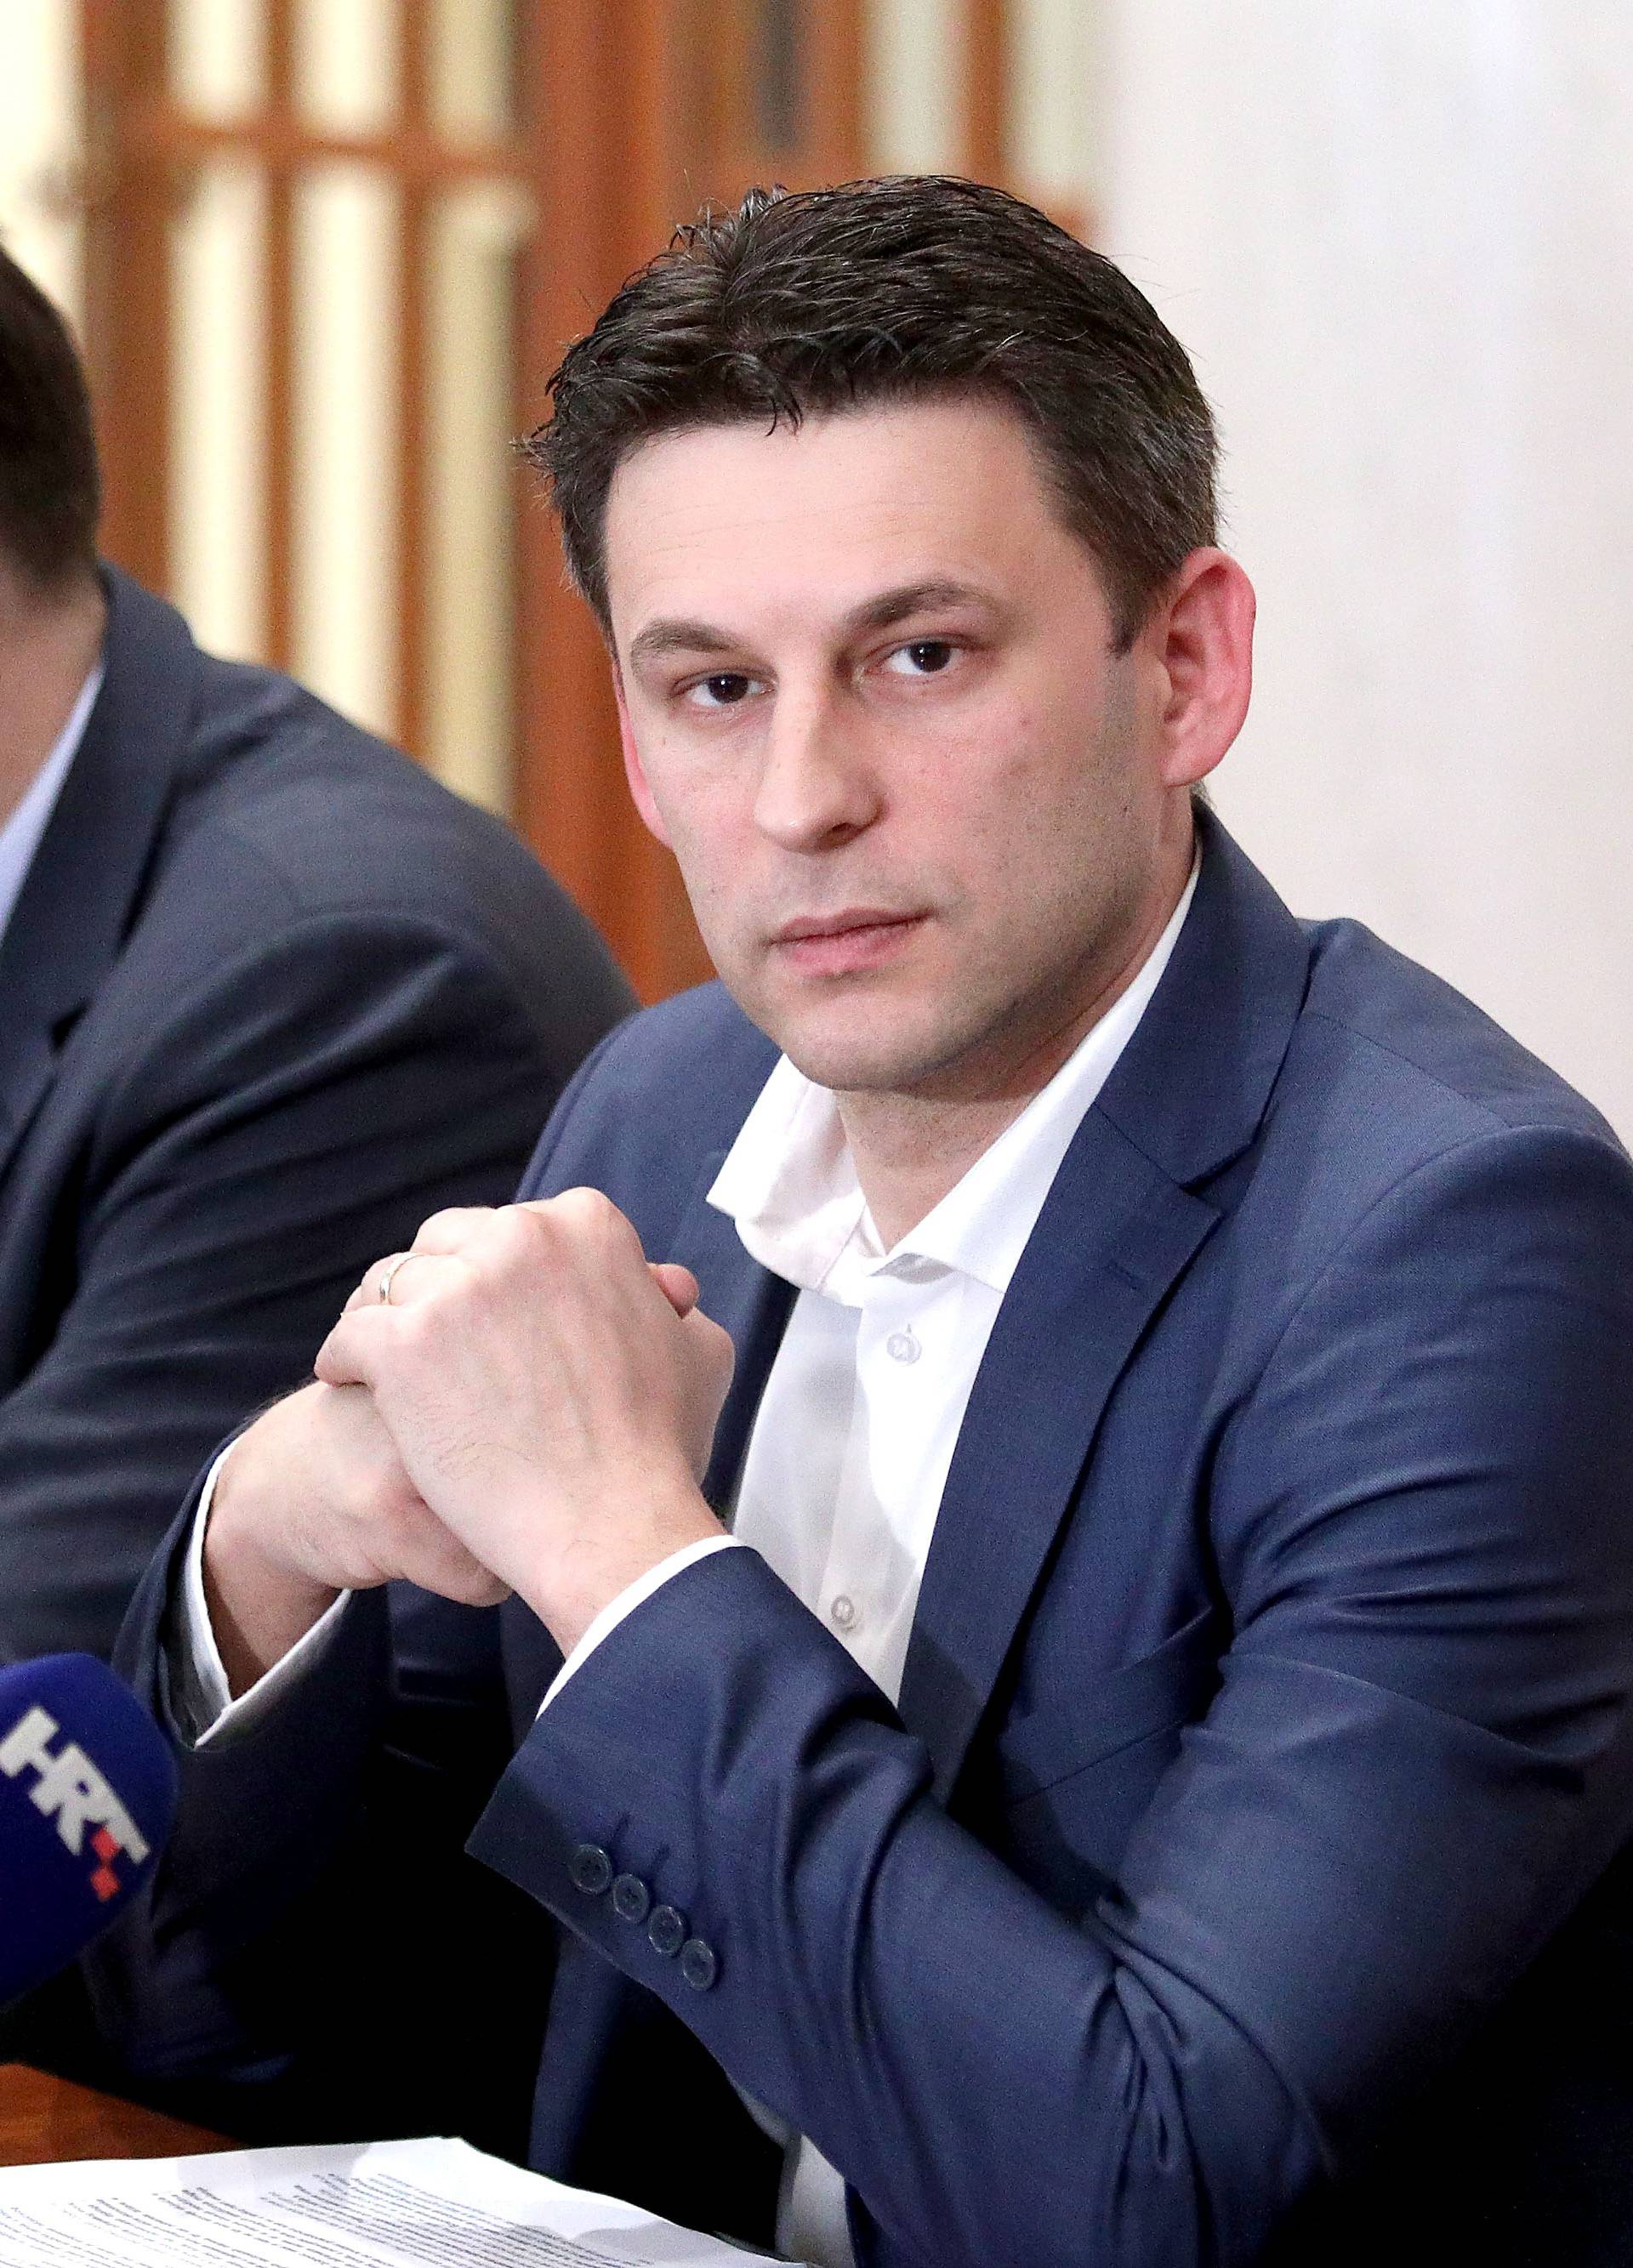 'Trebamo proglasiti isključivi gospodarski pojas u Jadranu'